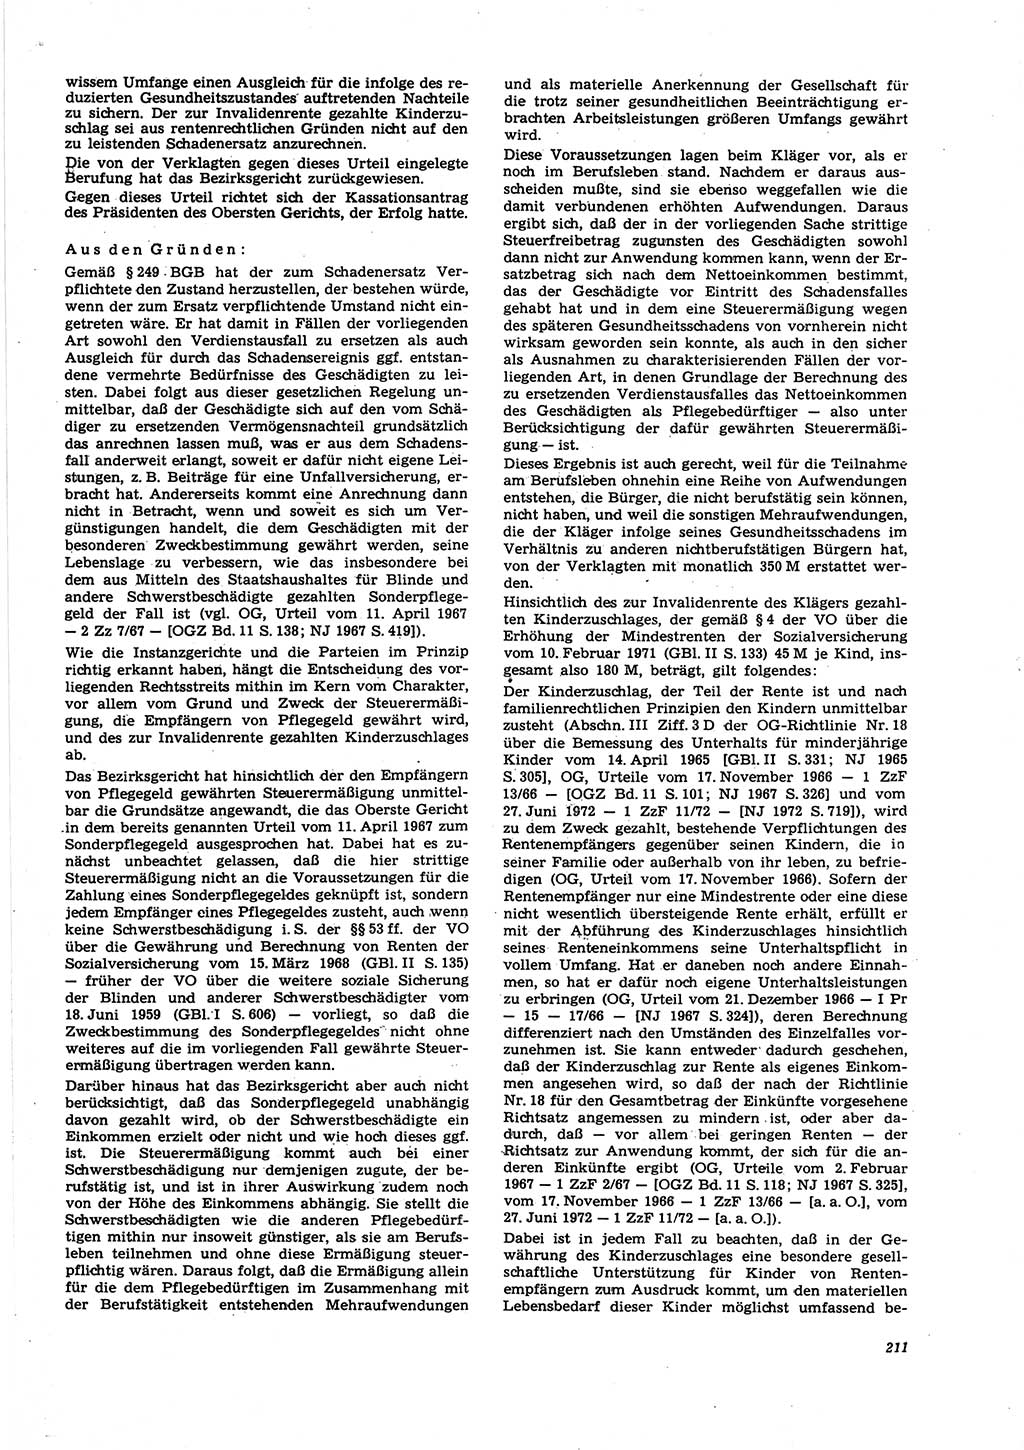 Neue Justiz (NJ), Zeitschrift für Recht und Rechtswissenschaft [Deutsche Demokratische Republik (DDR)], 27. Jahrgang 1973, Seite 211 (NJ DDR 1973, S. 211)